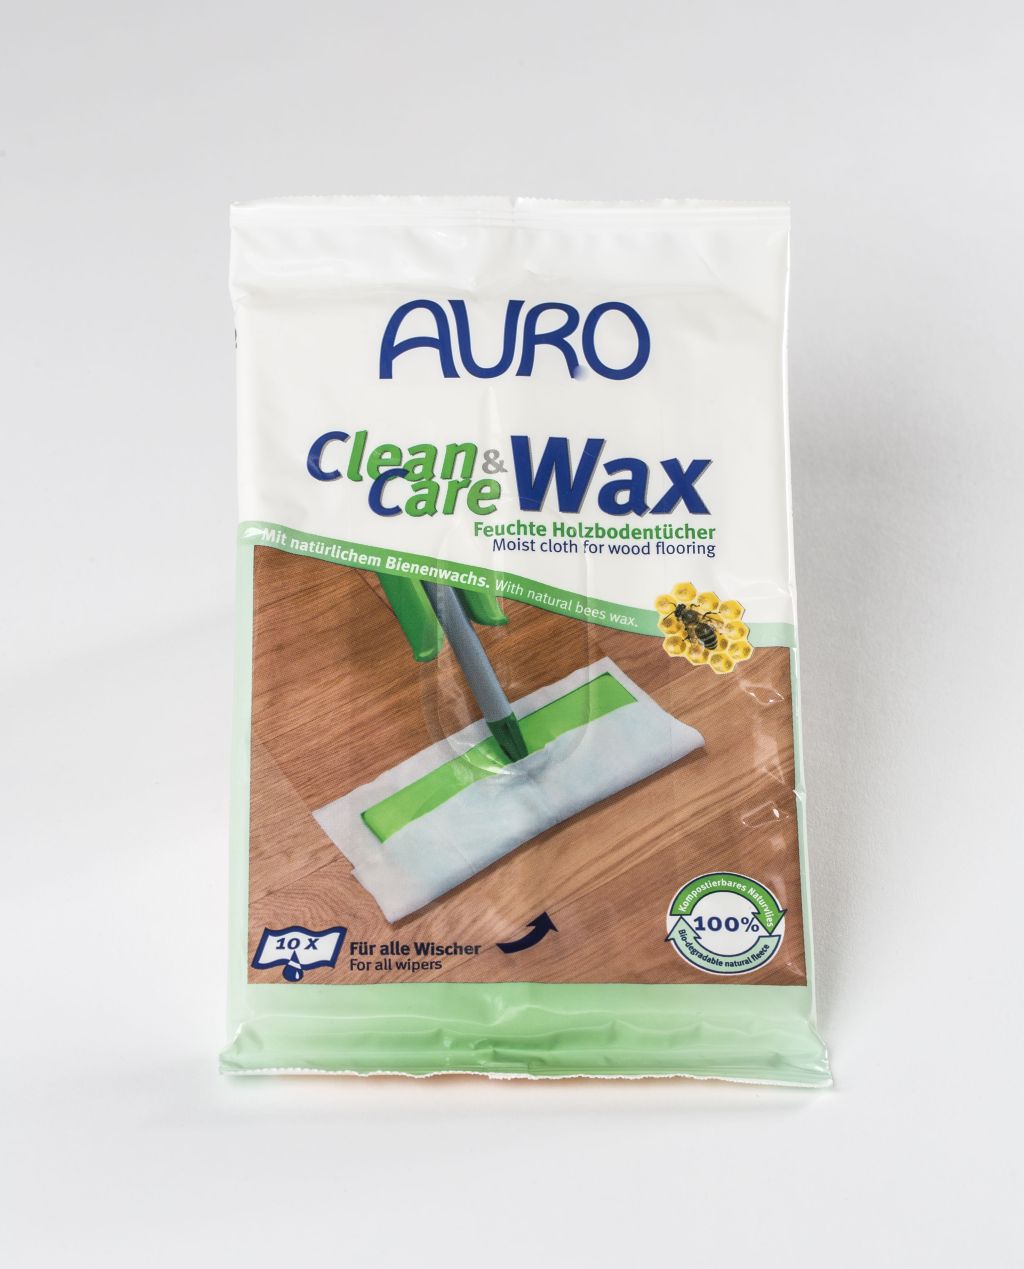 Clean & Care Wax - Feuchte Holzbodentücher - 10 Tücher